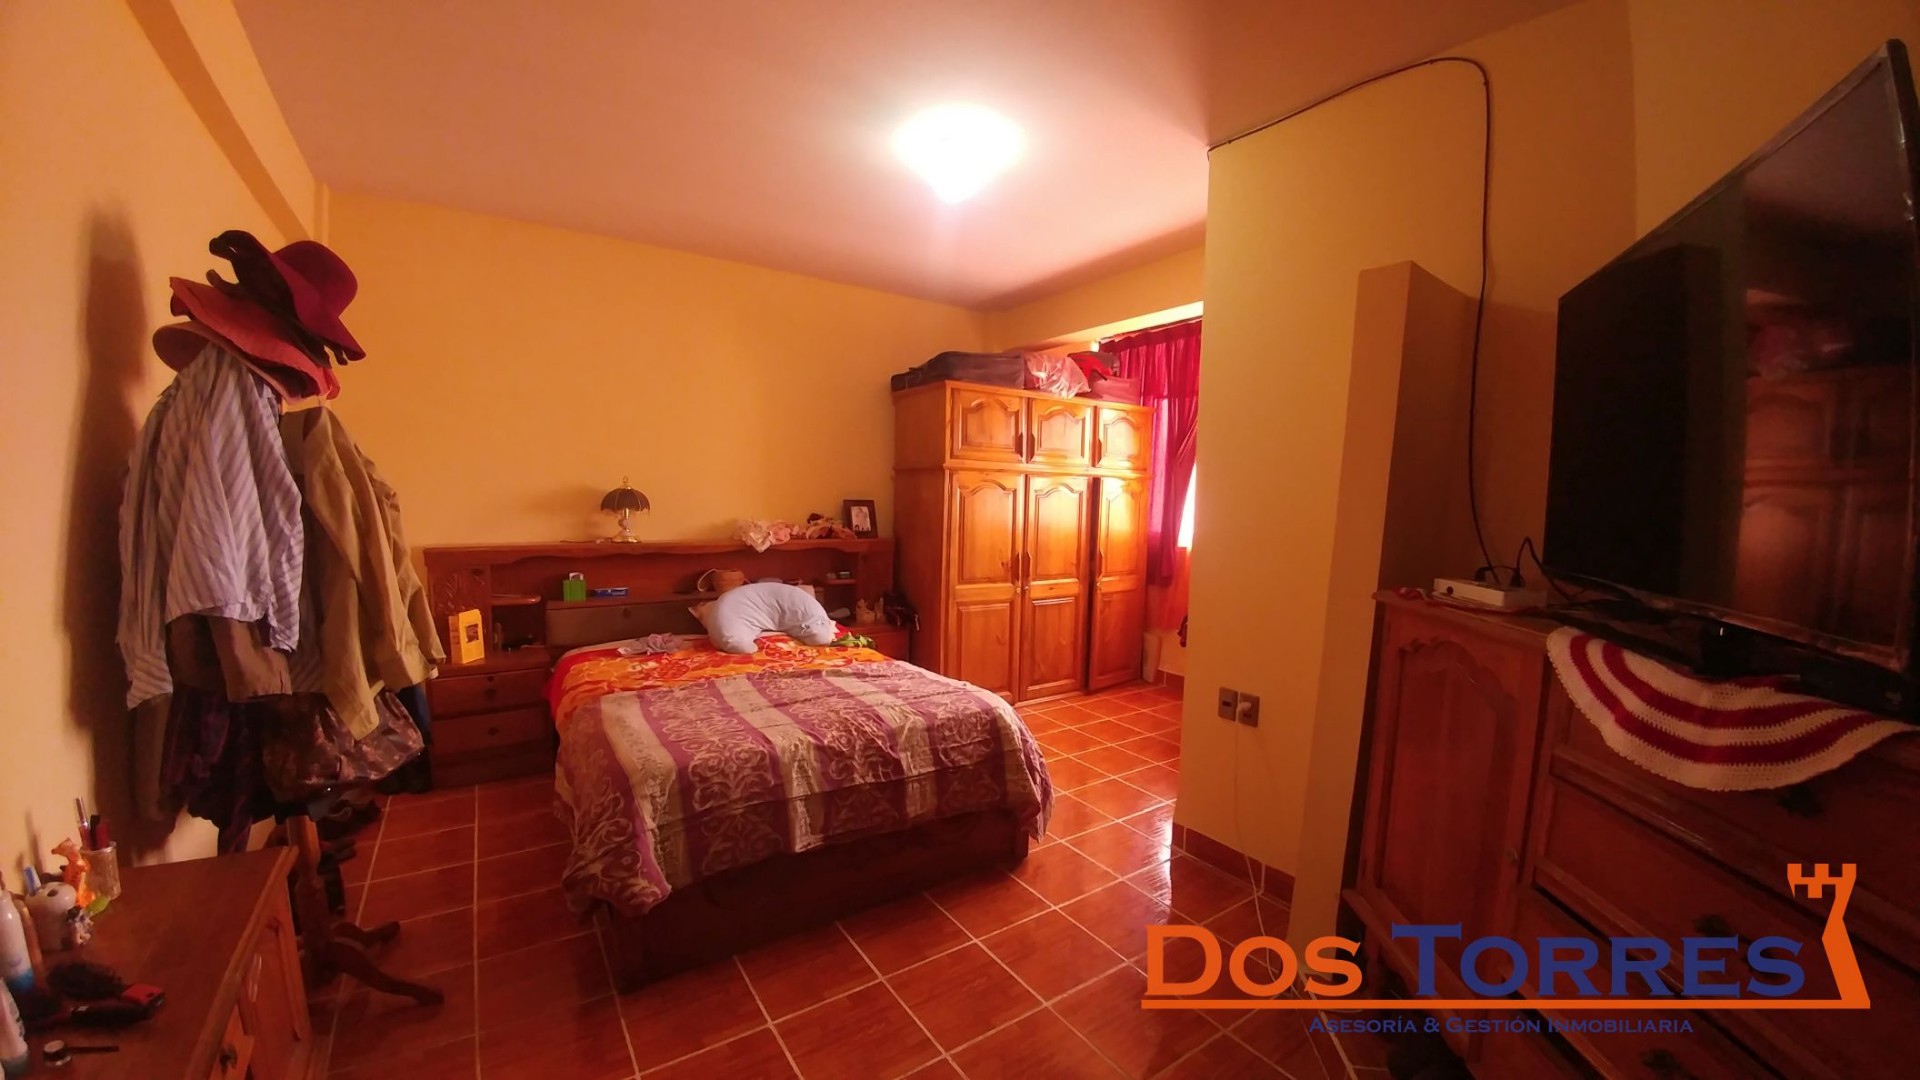 Casa en Venta137.000$us Chillimarca casa en venta con 5 Dormitorios - Ref. 910 Foto 5